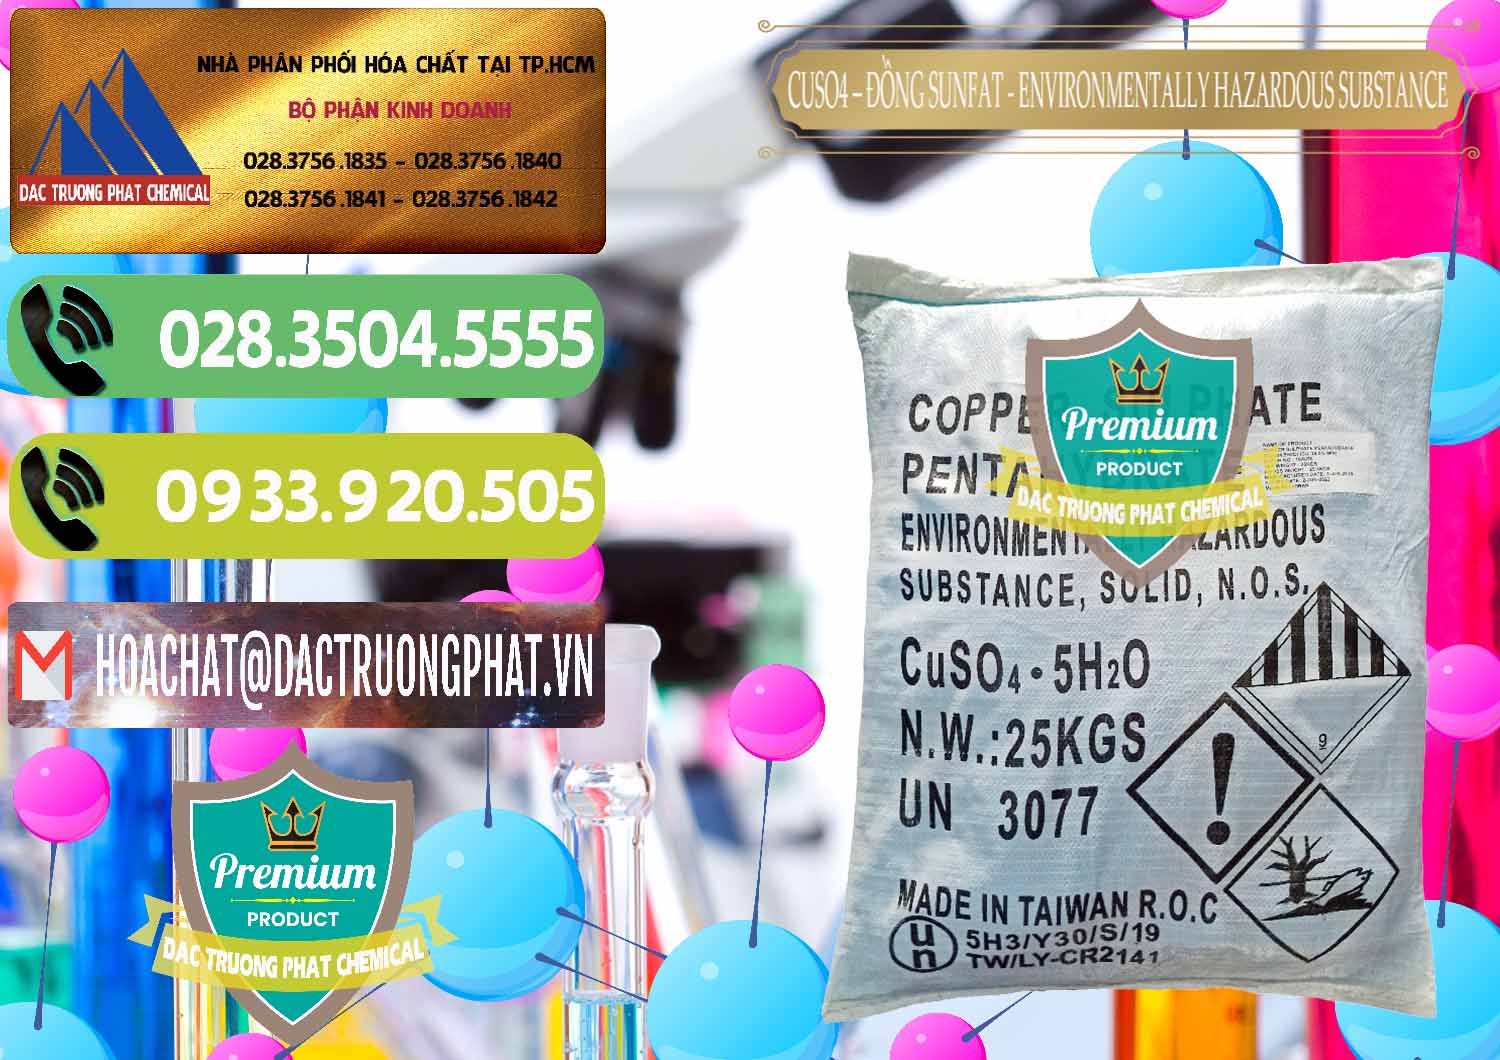 Công ty bán & phân phối CuSO4 – Đồng Sunfat Đài Loan Taiwan - 0059 - Cty chuyên phân phối _ cung ứng hóa chất tại TP.HCM - hoachatmientay.vn